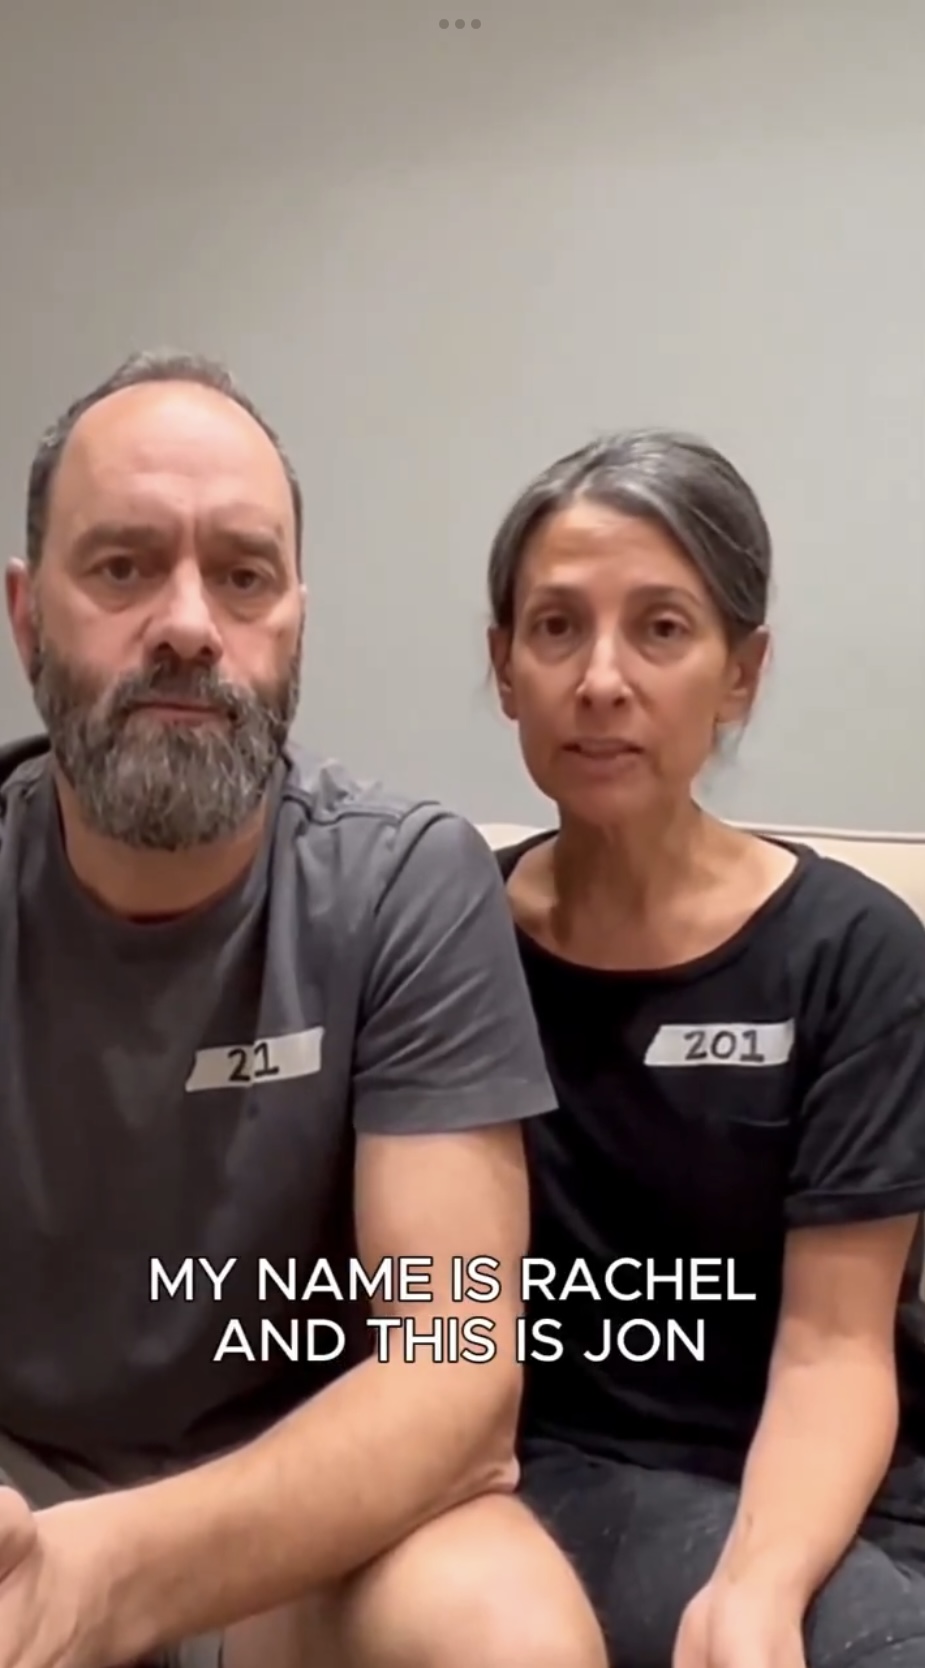 赫什（Hersh Goldberg-Polin）父母拍片回应，胸前数字201代表儿子被掳走的天数。